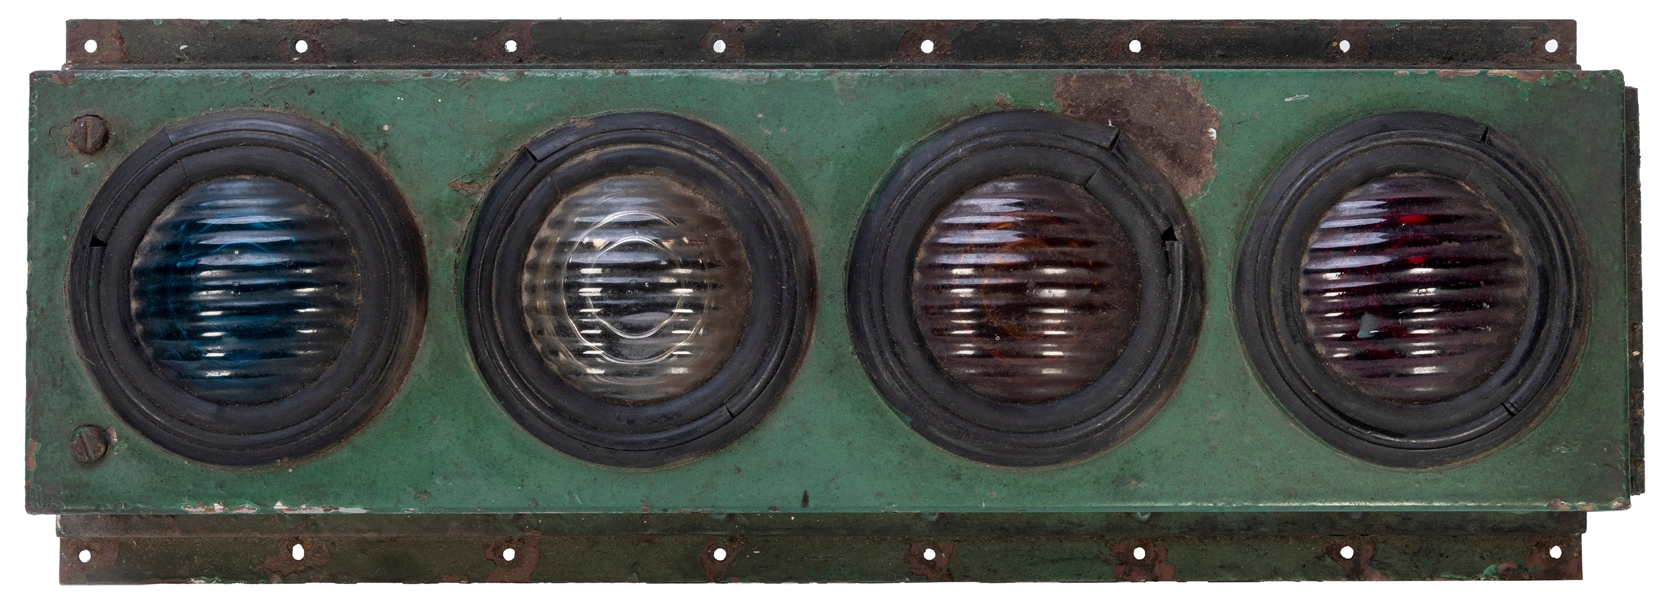  Antique Four Light Railroad Signal. 24 x 9 x 5”. Original w...